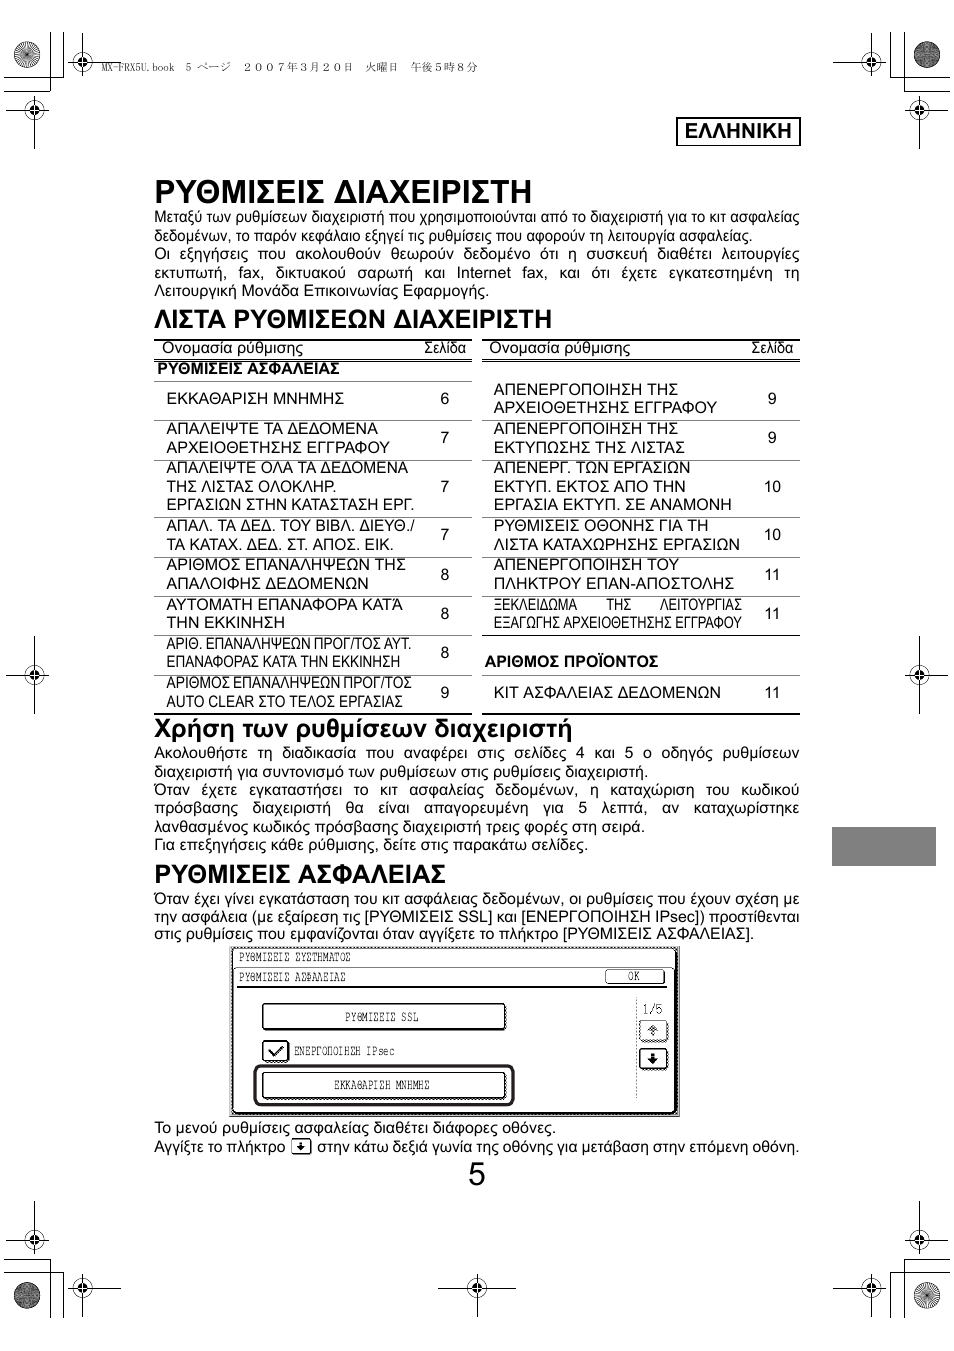 Ρυθμισεισ ∆ιαχειριστη, Ρυθμισεισ ασφαλειασ, Ελληνικη | Sharp Funkcja identyfikacji użytkownika User Manual | Page 127 / 184